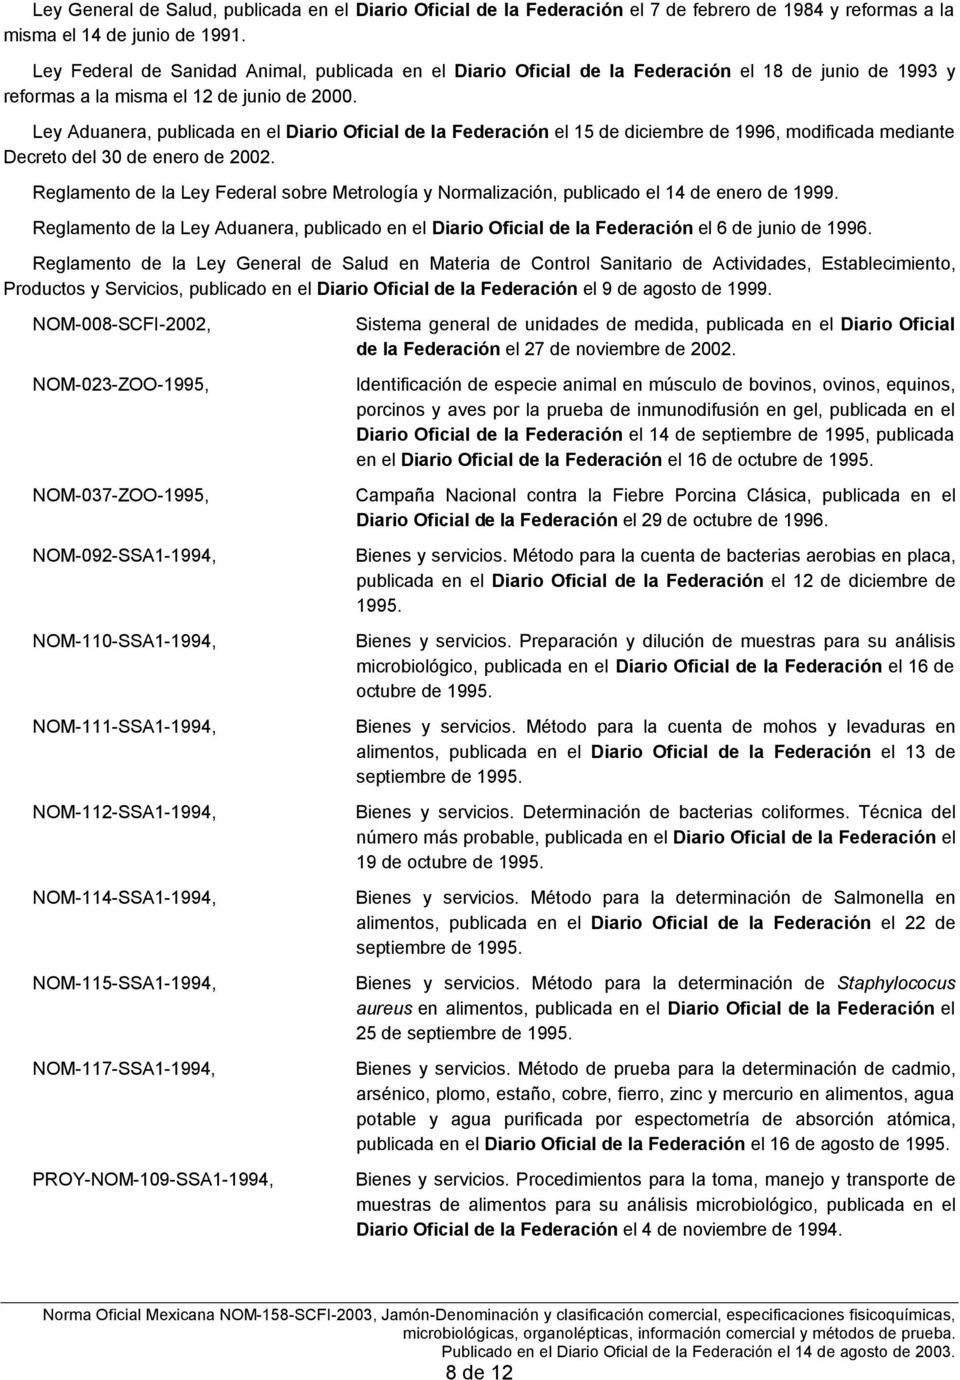 Ley Aduanera, publicada en el Diario Oficial de la Federación el 15 de diciembre de 1996, modificada mediante Decreto del 30 de enero de 2002.